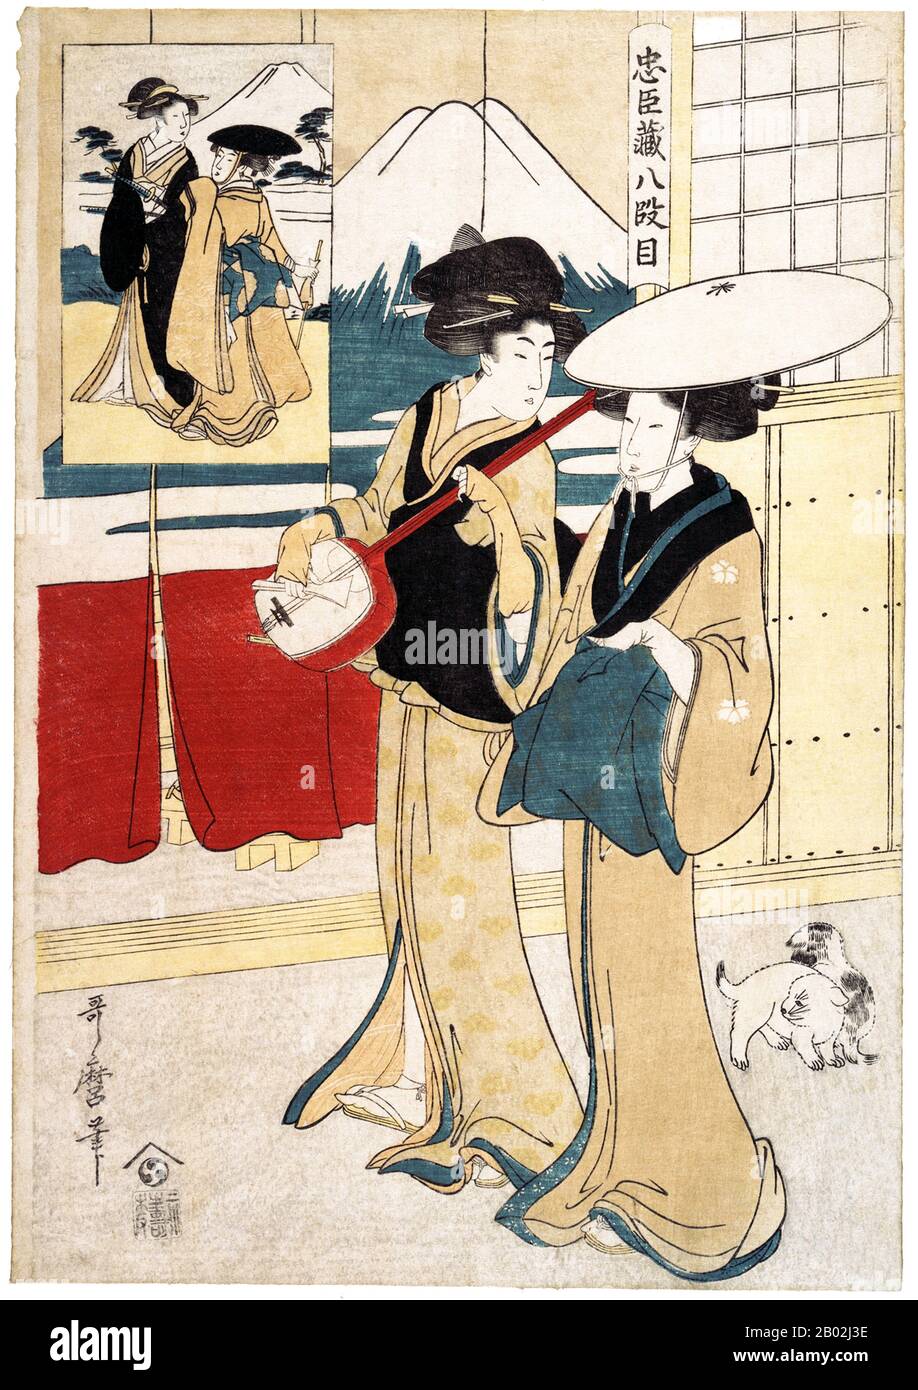 Japan: Tonase und Konami, zwei Tori-oi (鳥追い), oder umherziehende Musikerinnen mit einer Shamisen. Chusingura Act 8. Kitagawa Utamaro (ca. 1753 bis 31. Oktober 1806), 1801. Kitagawa Utamaro war ein japanischer Druckmacher und Maler, der als einer der größten Künstler von Holzblockdrucken gilt (Ukiyo-e). Er ist vor allem bekannt für seine meisterhaft zusammengestellten Studien über Frauen, bekannt als Bijinga. Er produzierte auch Naturstudien, insbesondere illustrierte Bücher über Insekten. Stockfoto